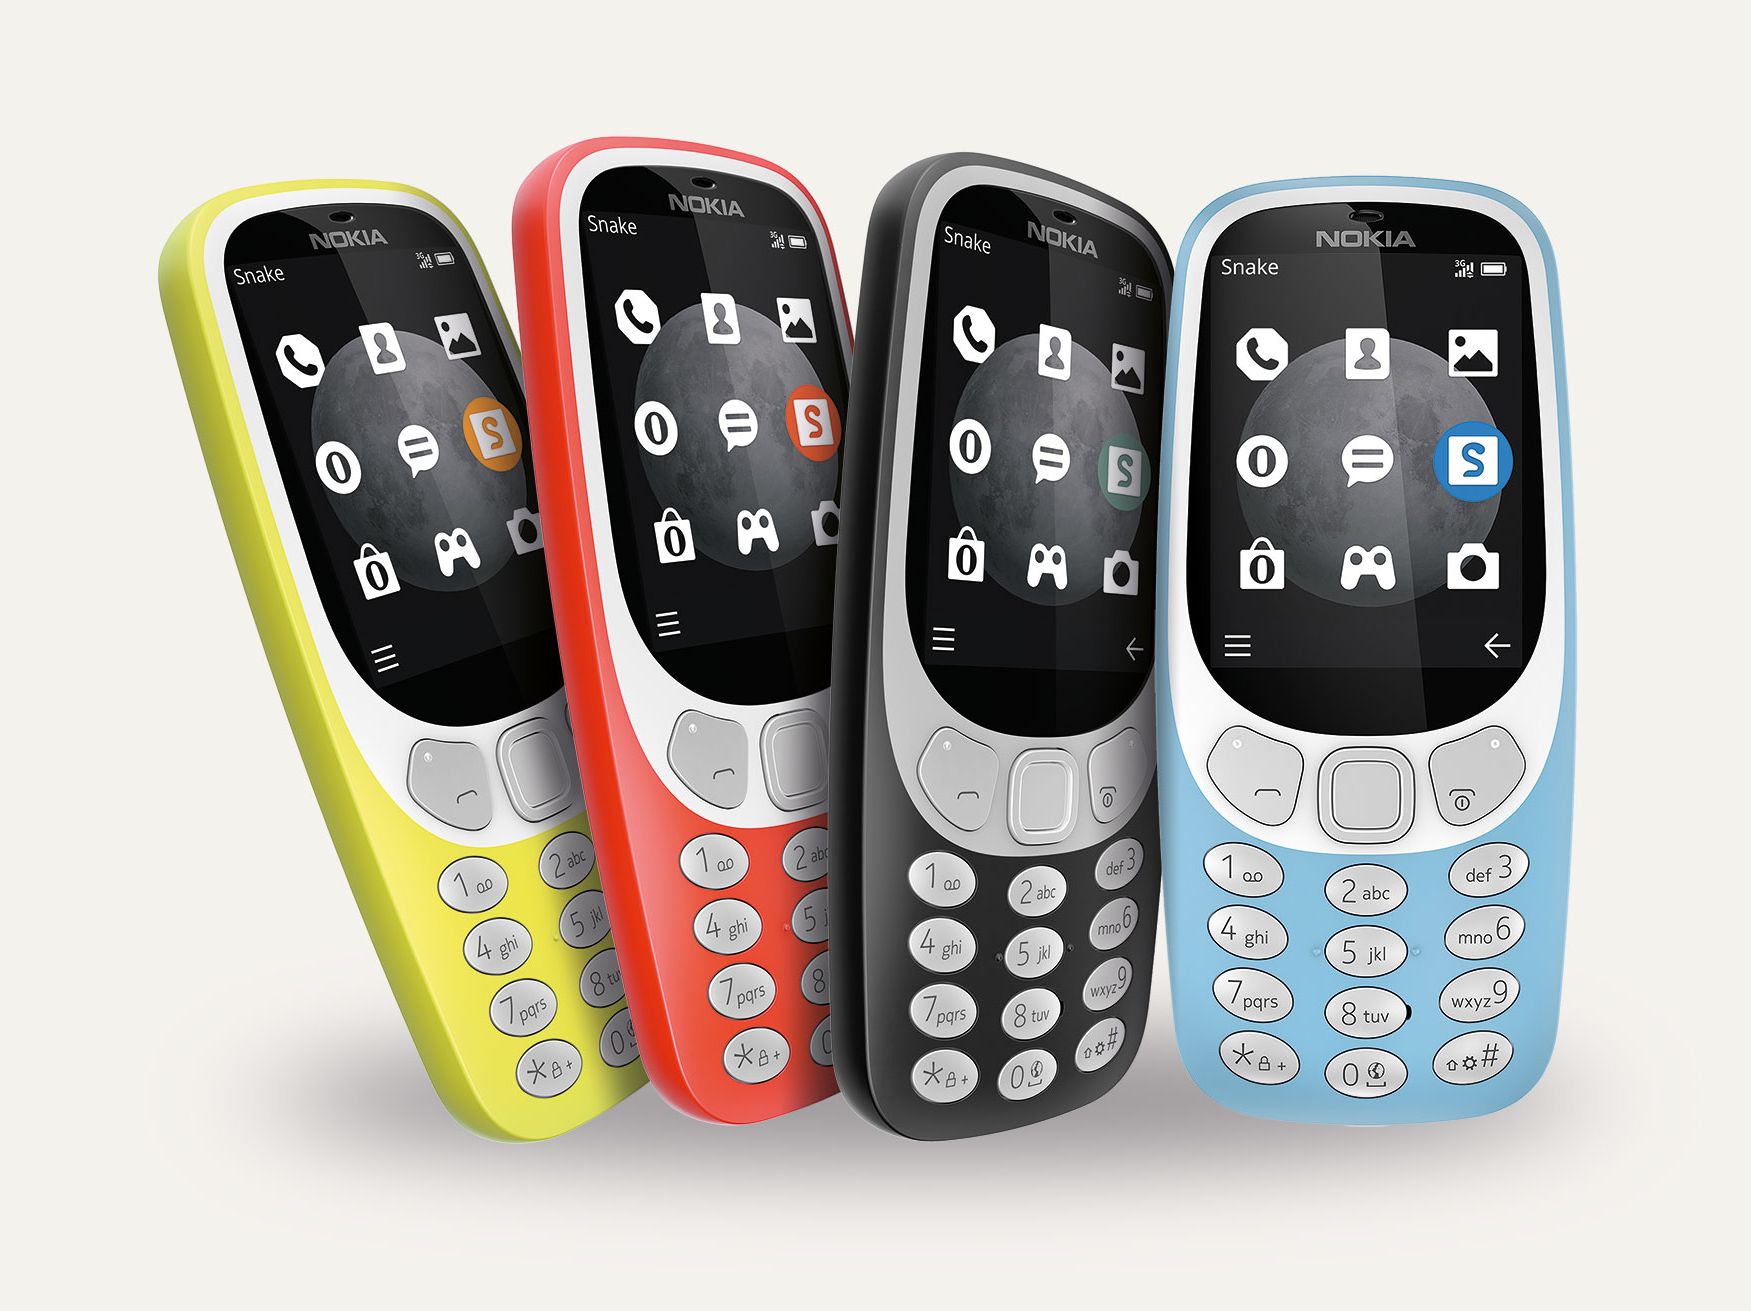 Nokia 3310 Vs Nokia 3310 Quelle Est La Différence 17 Ans, 52% OFF